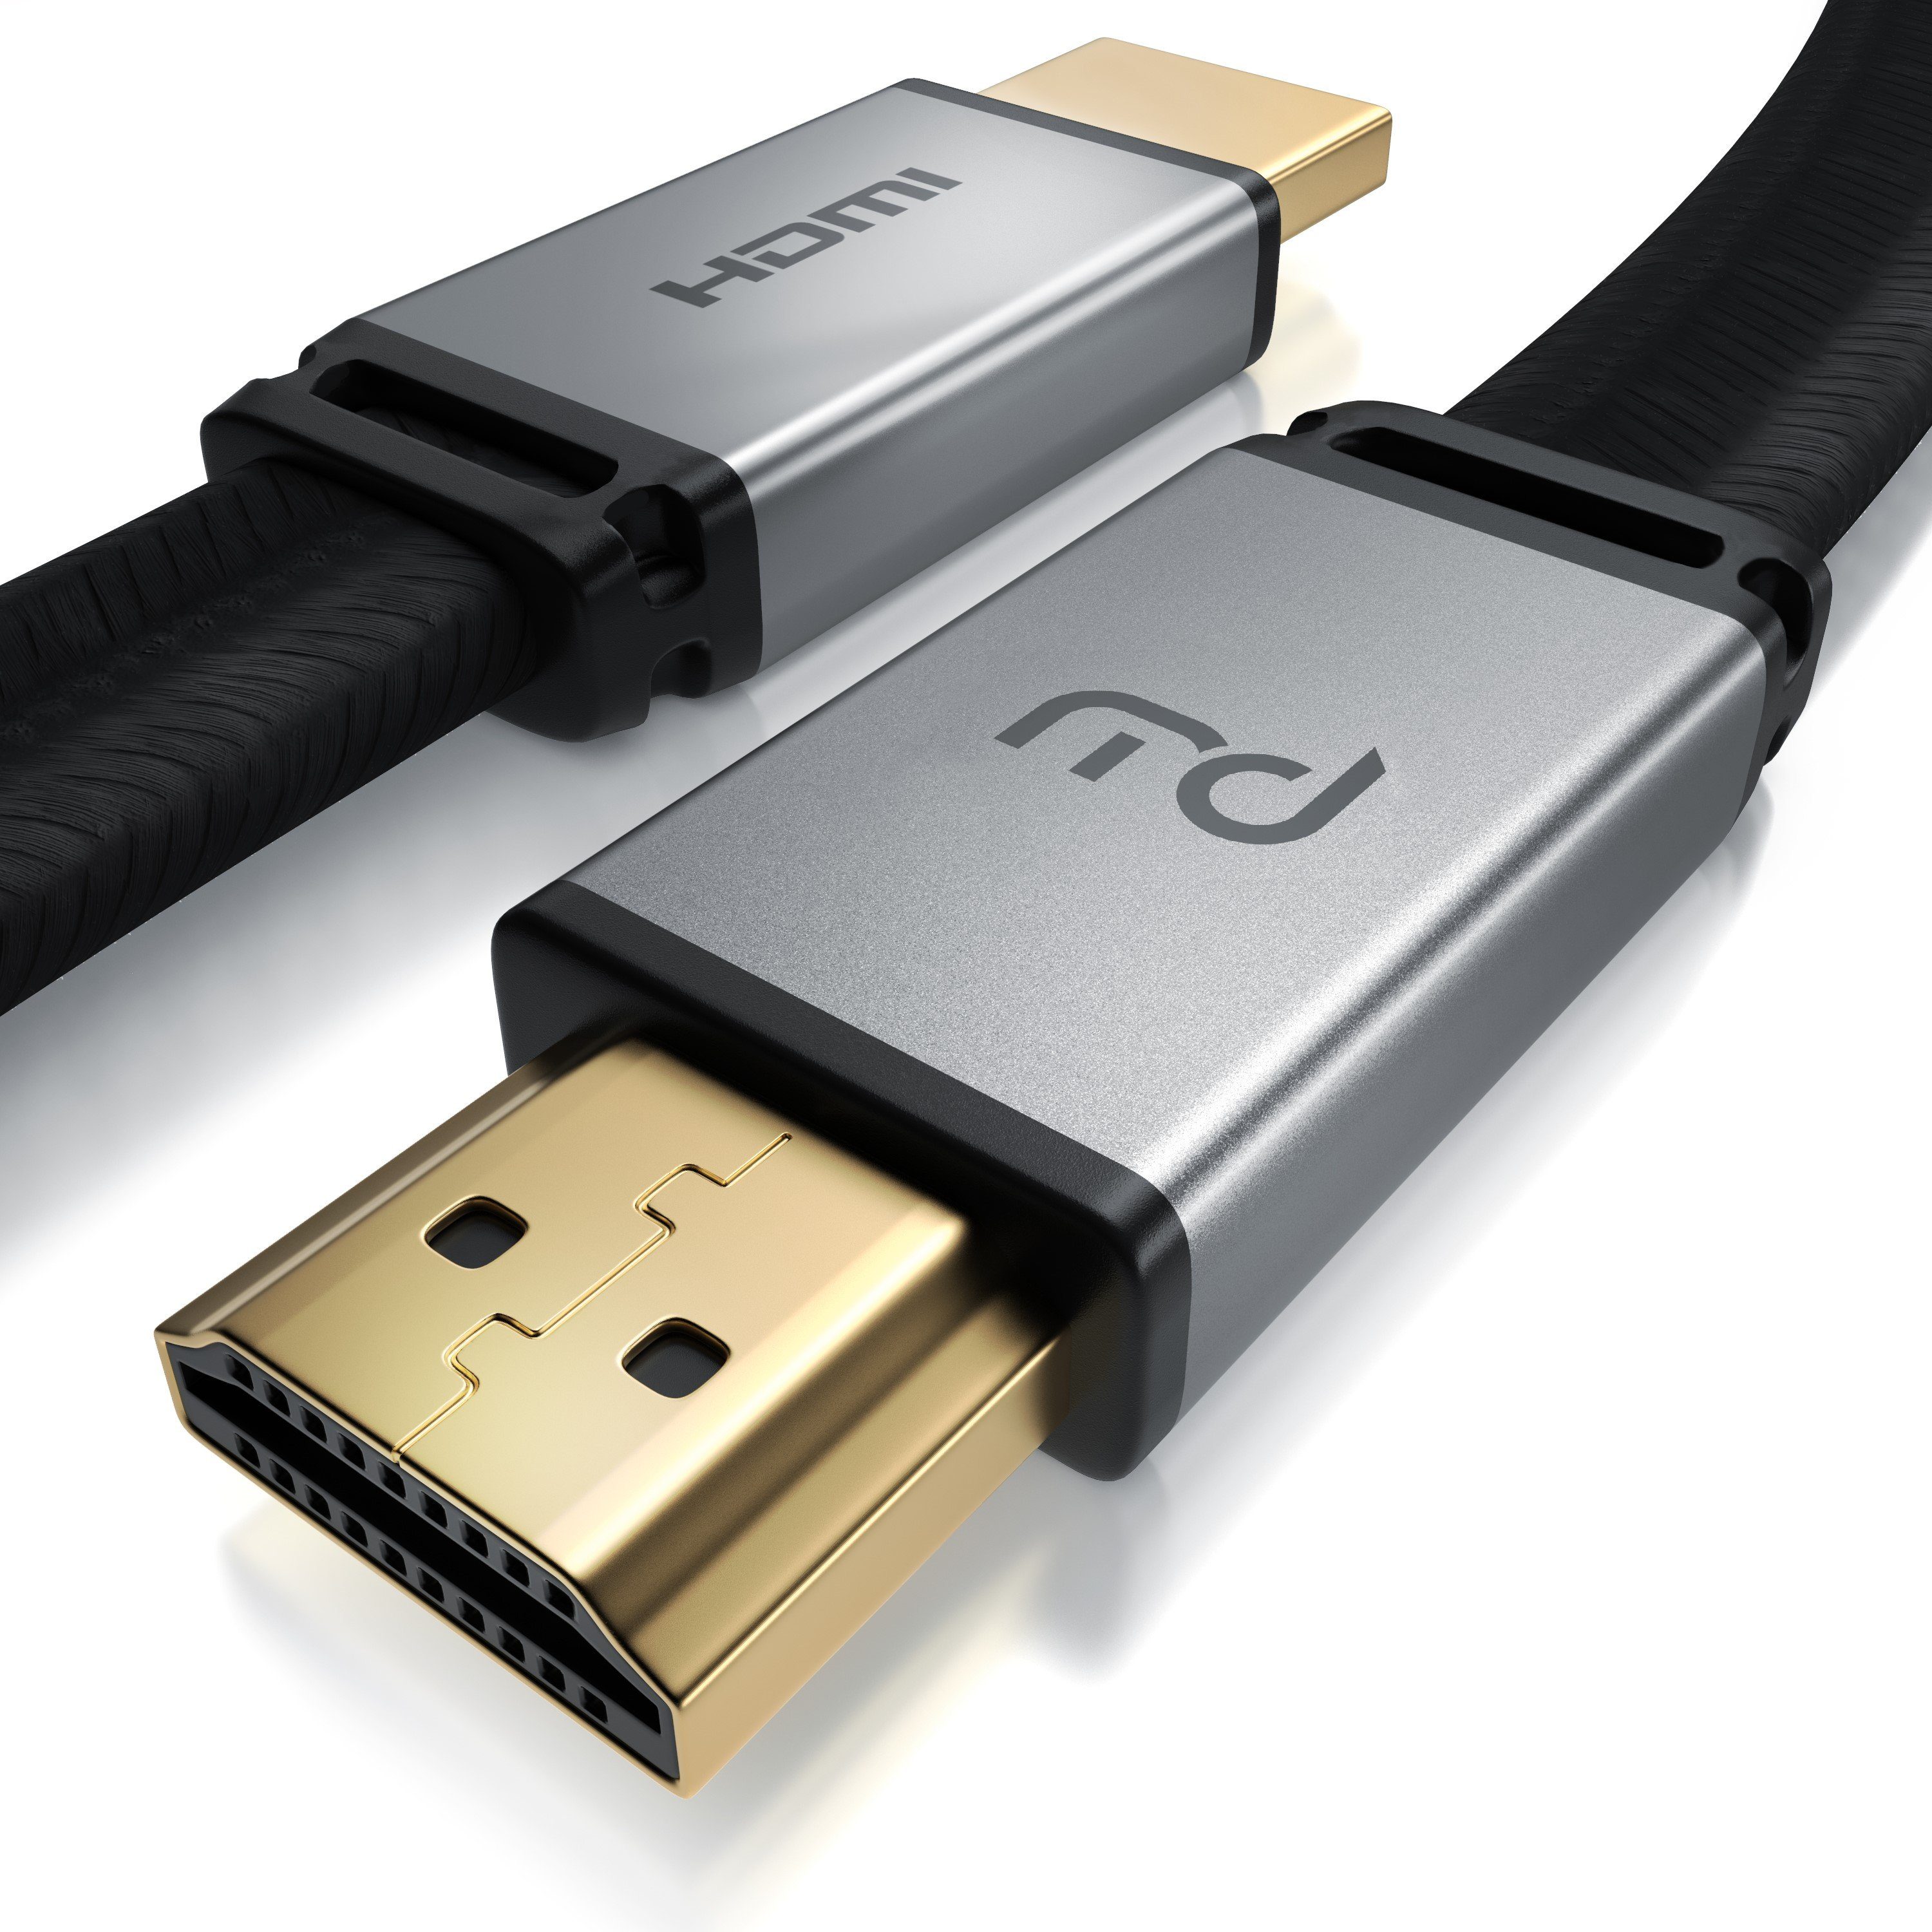 Primewire HDMI-Kabel, 2.1, HDMI Typ A (100 cm), 8K Flachbandkabel mit Gewebemantel 7680 x 4320 @ 120 Hz DSC flach - 1m